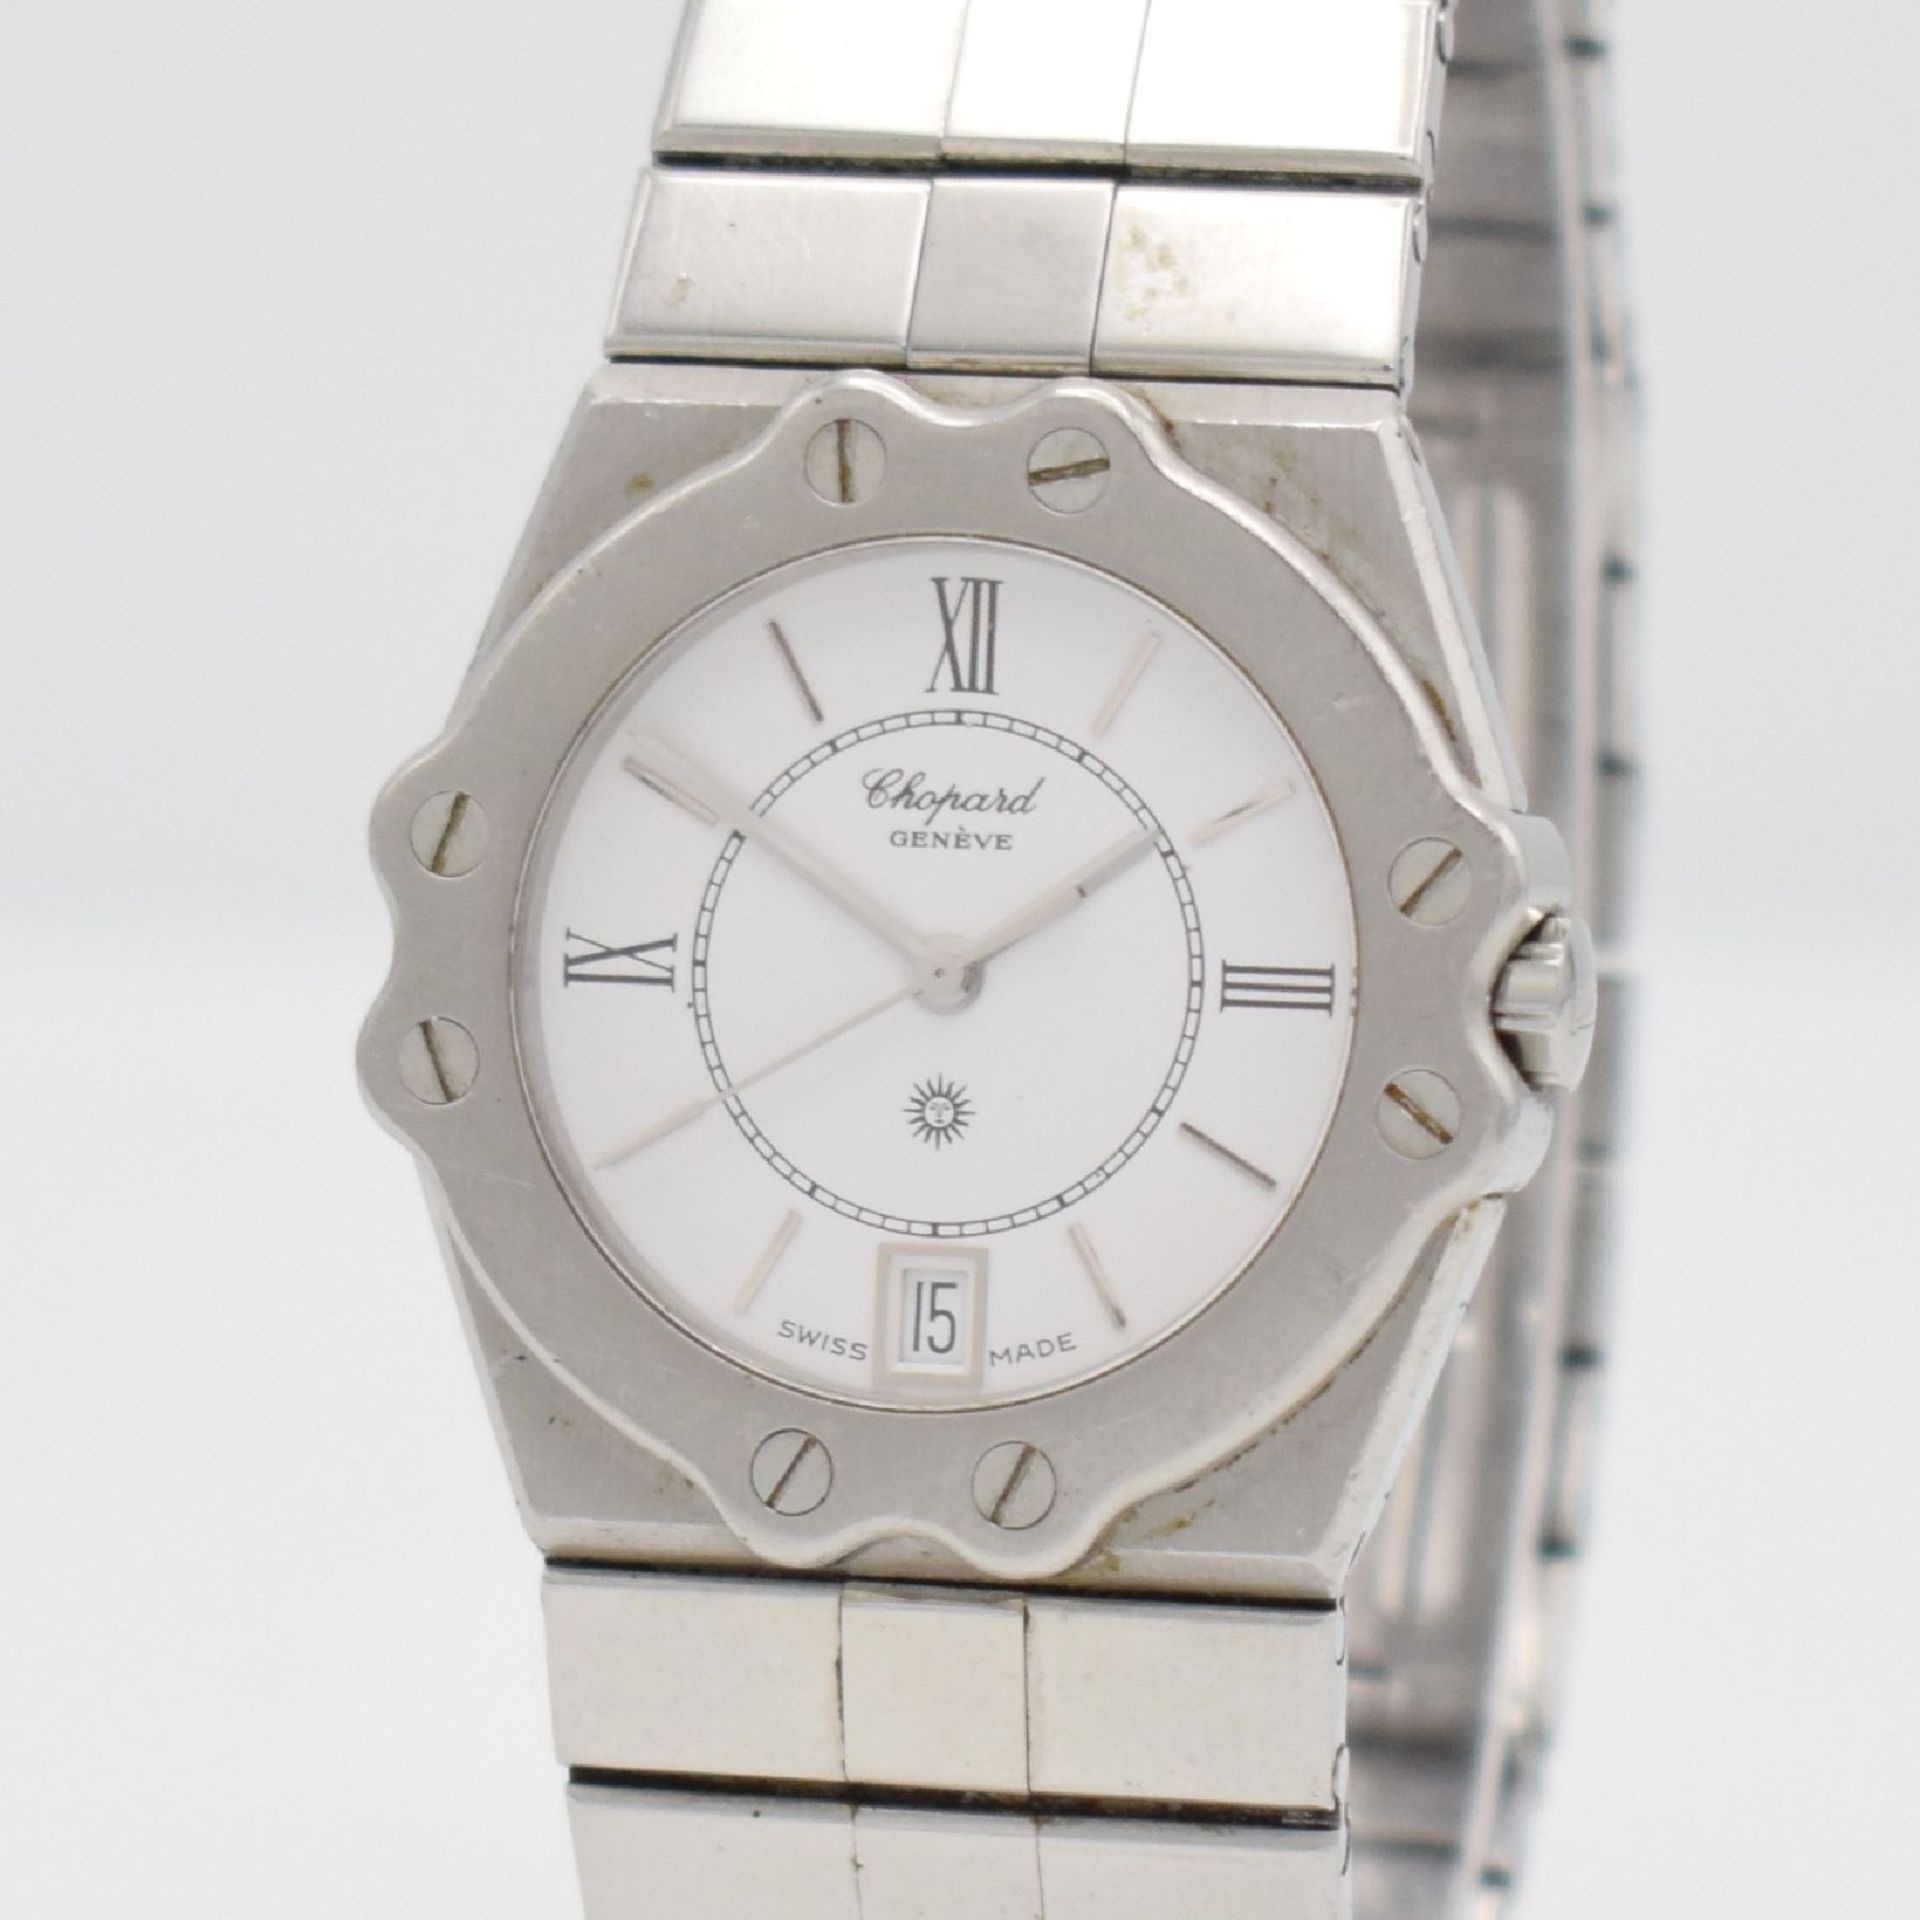 CHOPARD St. Moritz wristwatch in stainless steel, Switzerland around 1995, quartz, reference 8025, - Bild 4 aus 6